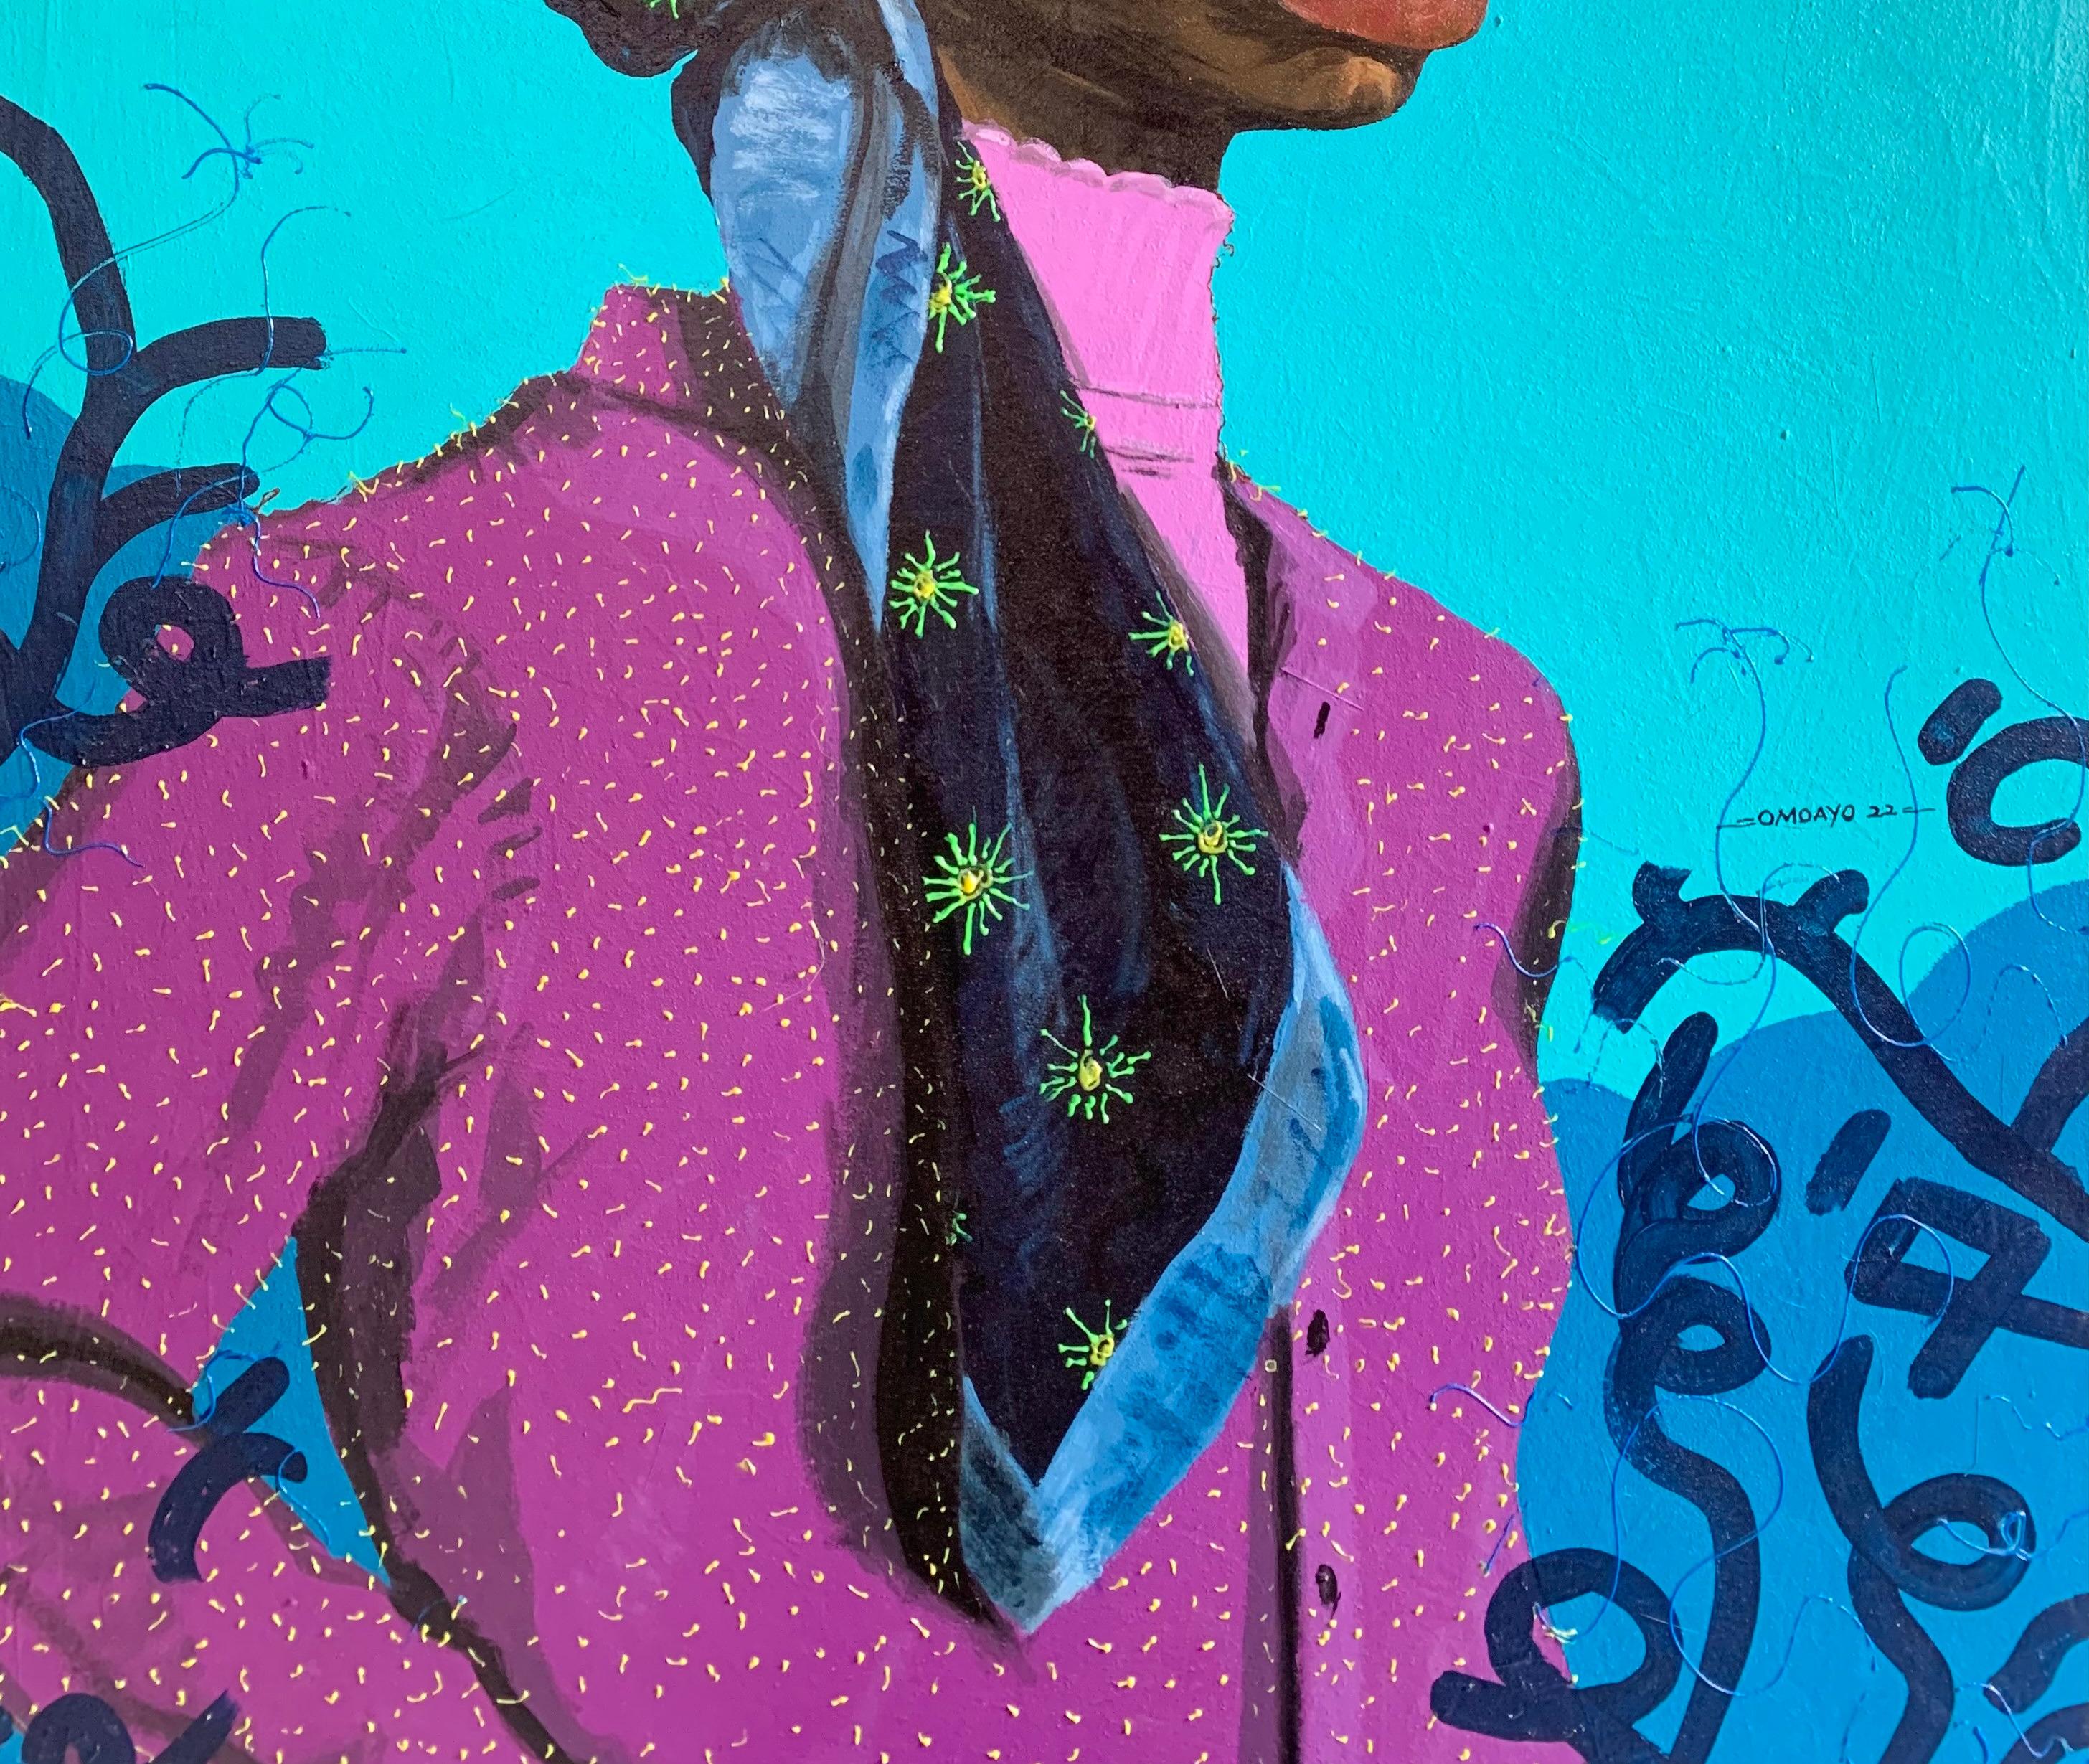 L'écharpe bleue qui lie - Néo-expressionnisme Painting par Omoayo George Osoba